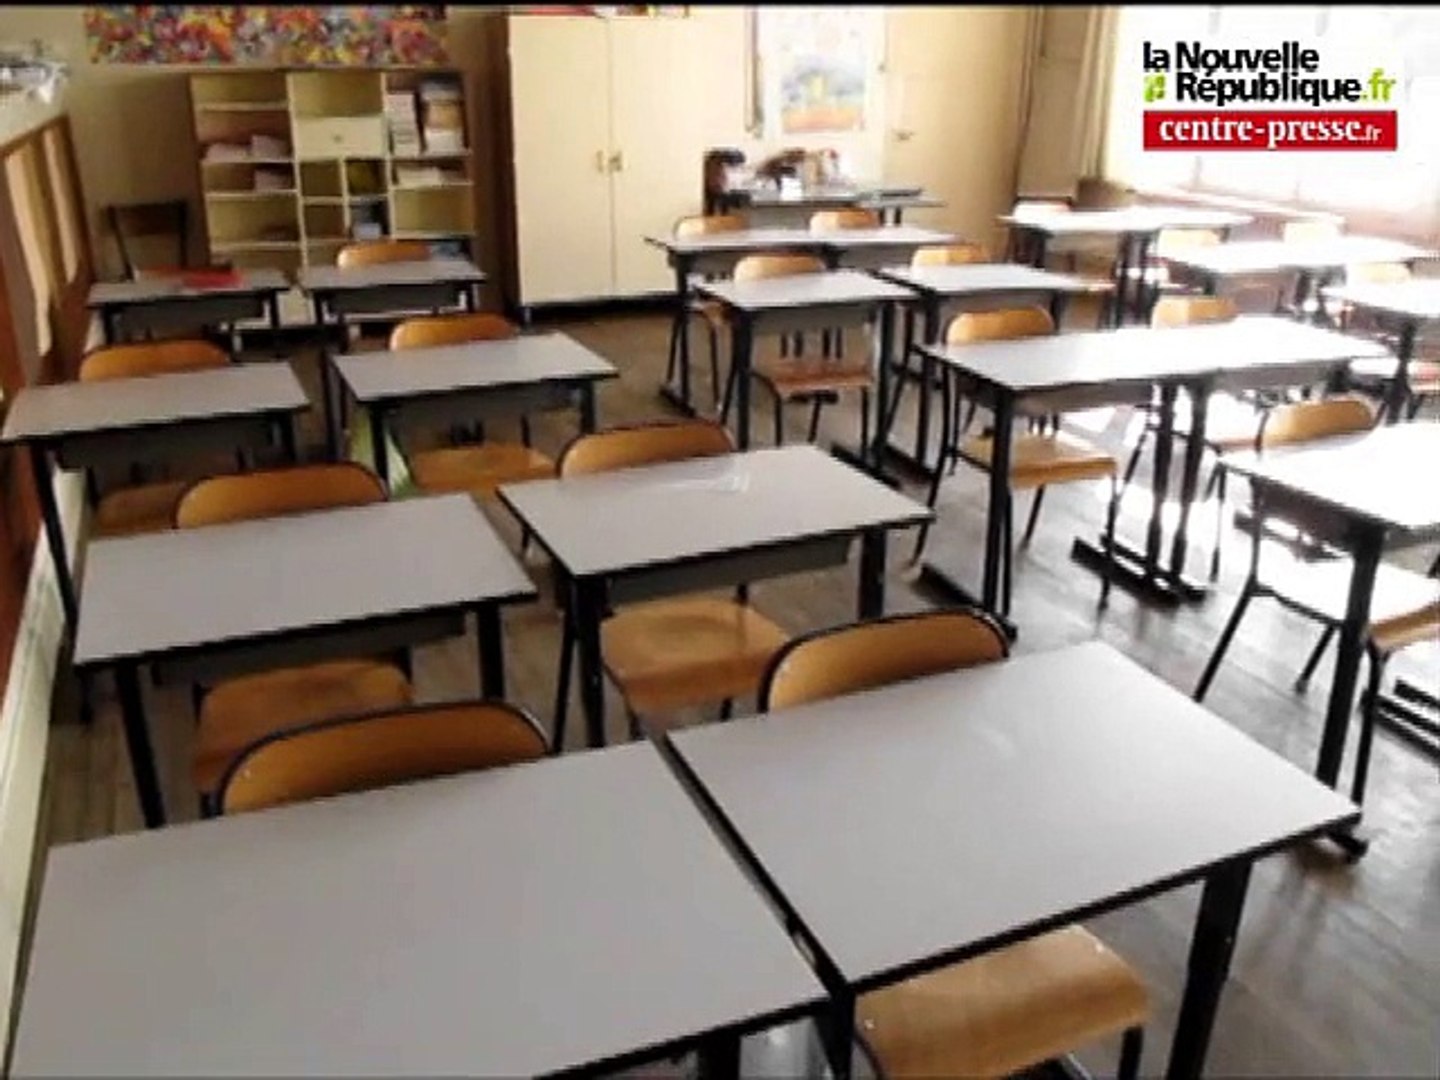 VIDEO. Châtellerault: l'école Jules-Ferry occupée - Vidéo Dailymotion